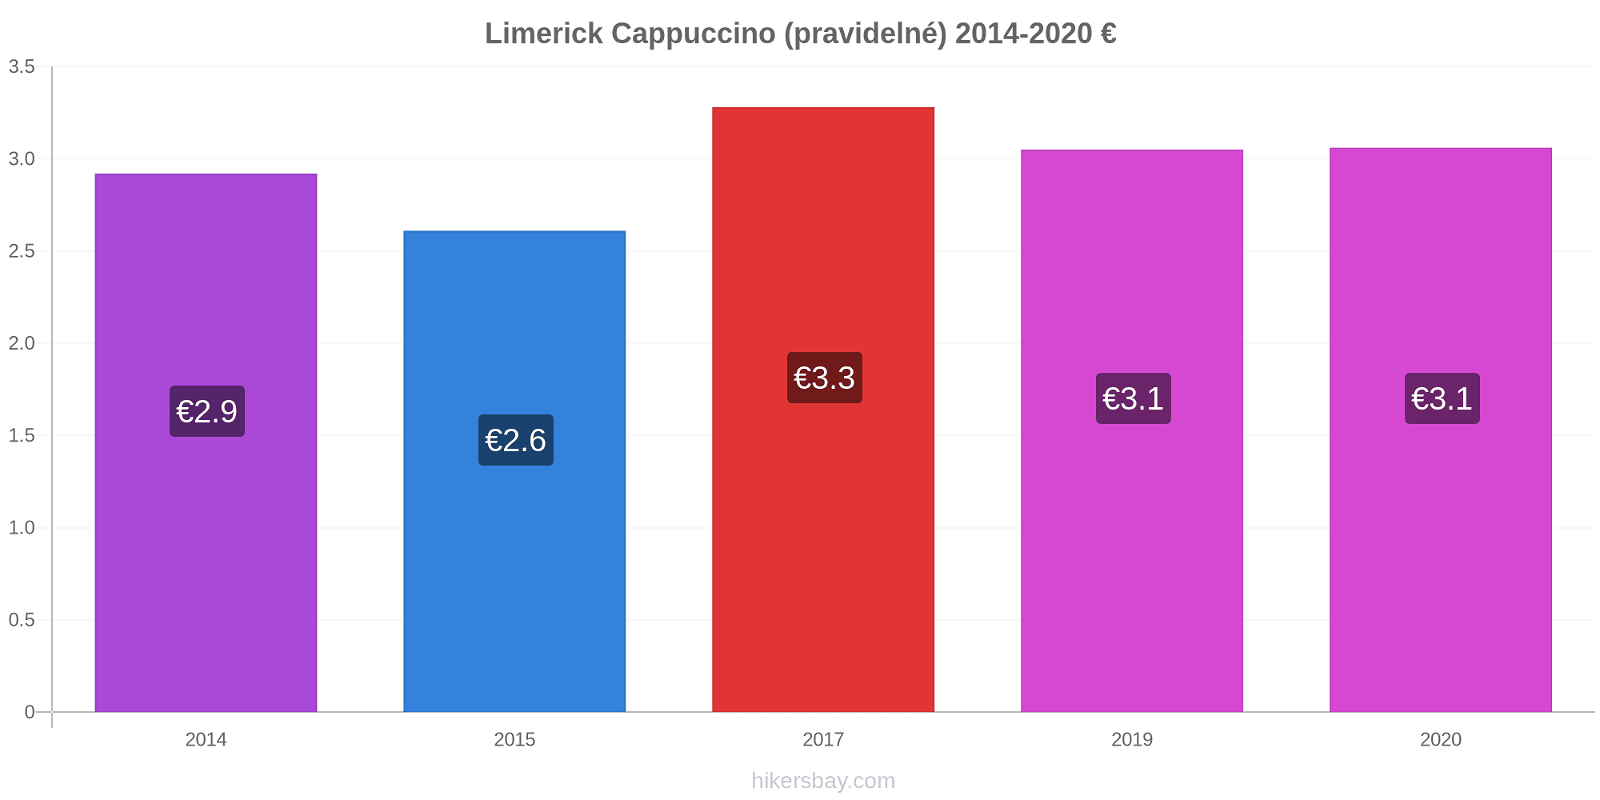 Limerick změny cen Cappuccino (pravidelné) hikersbay.com